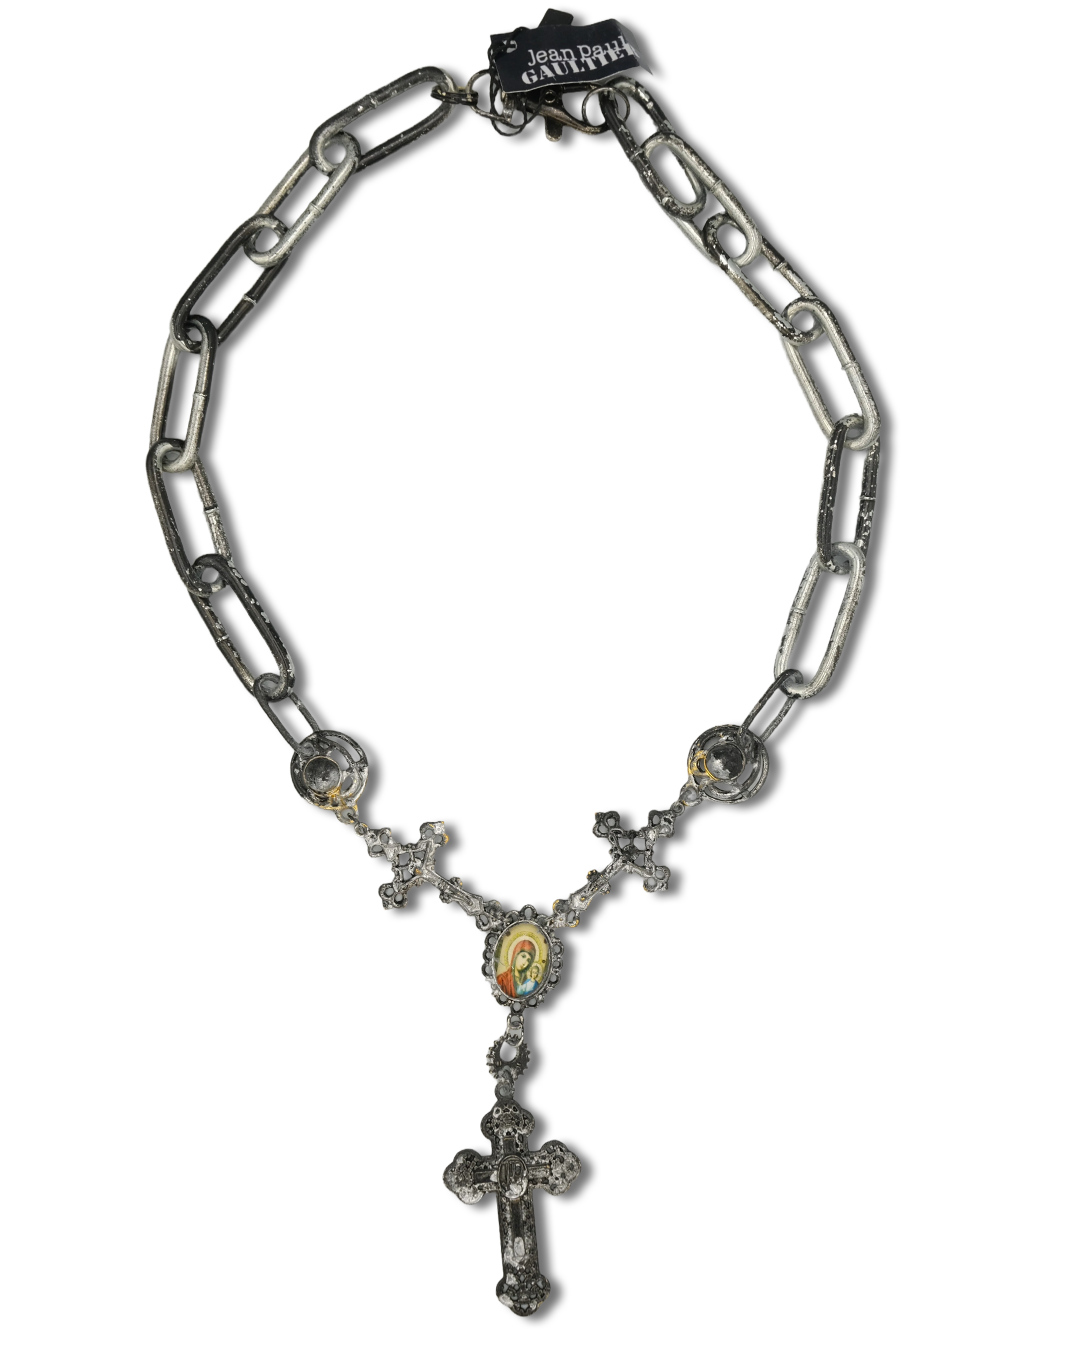 Jean Paul Gaultier 90s Sample Necklace